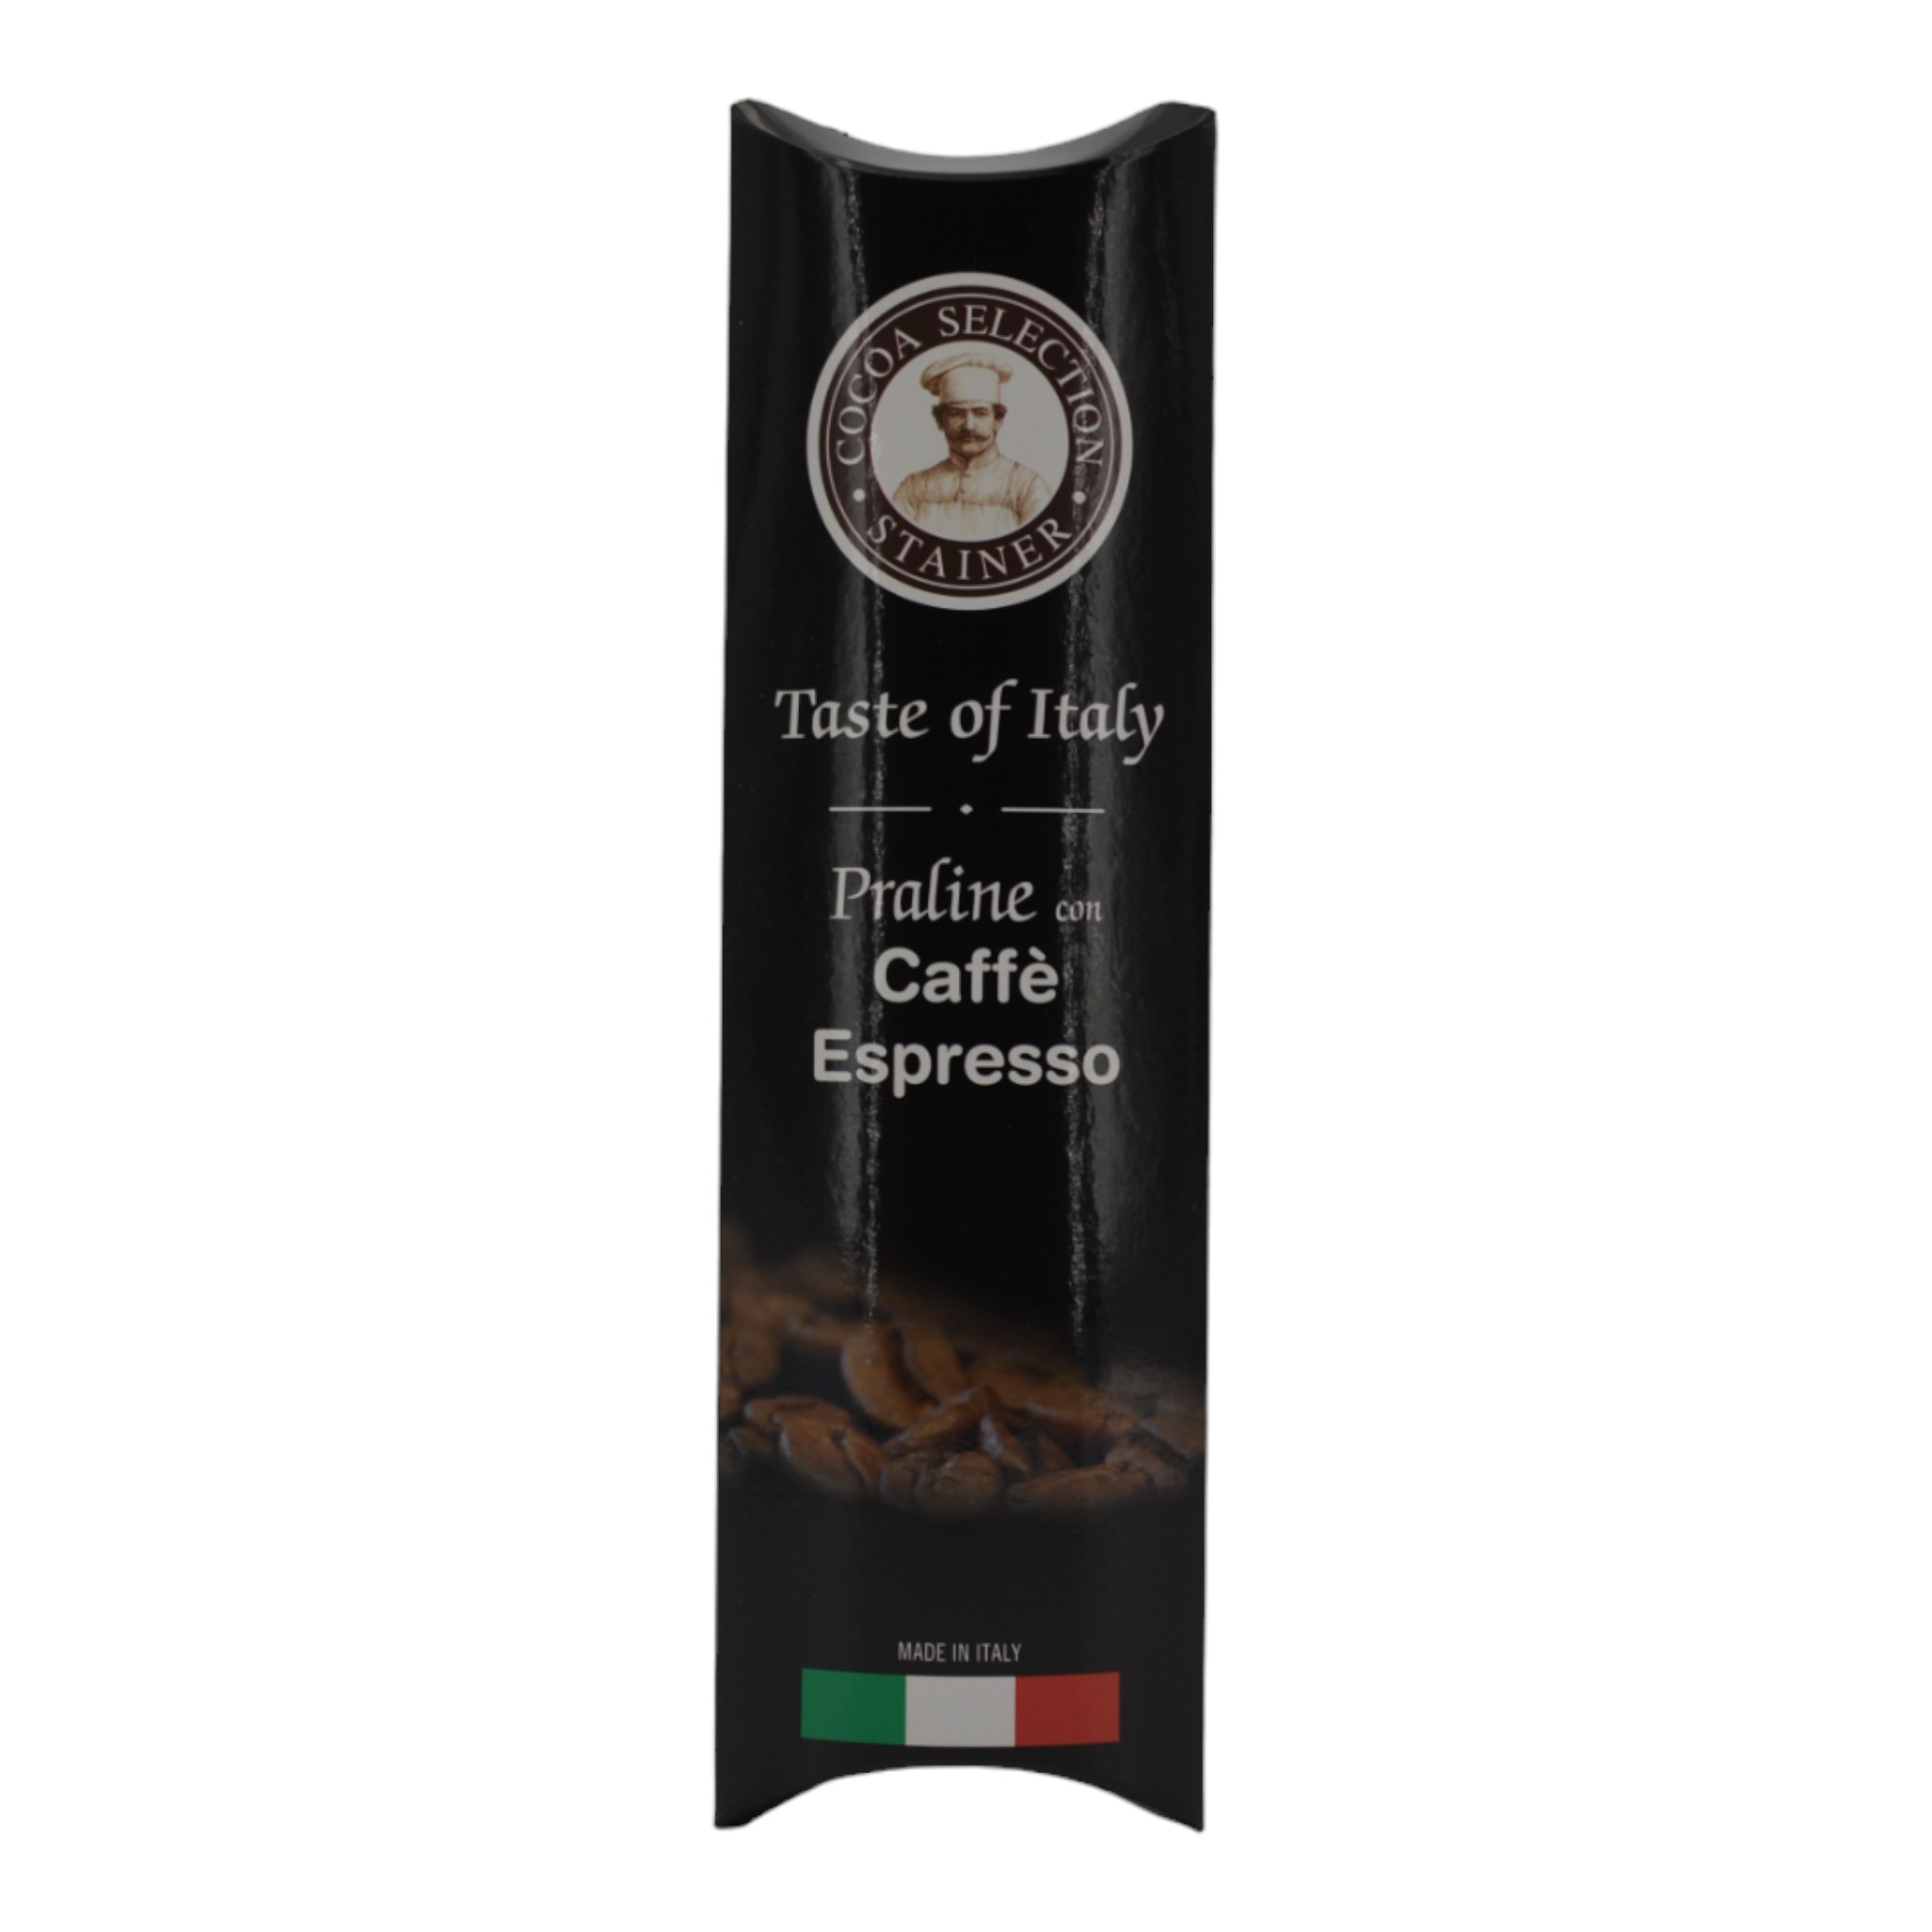 8019745032629Andrea Stainer Taste of Itali Praline con Caffee Espresso f